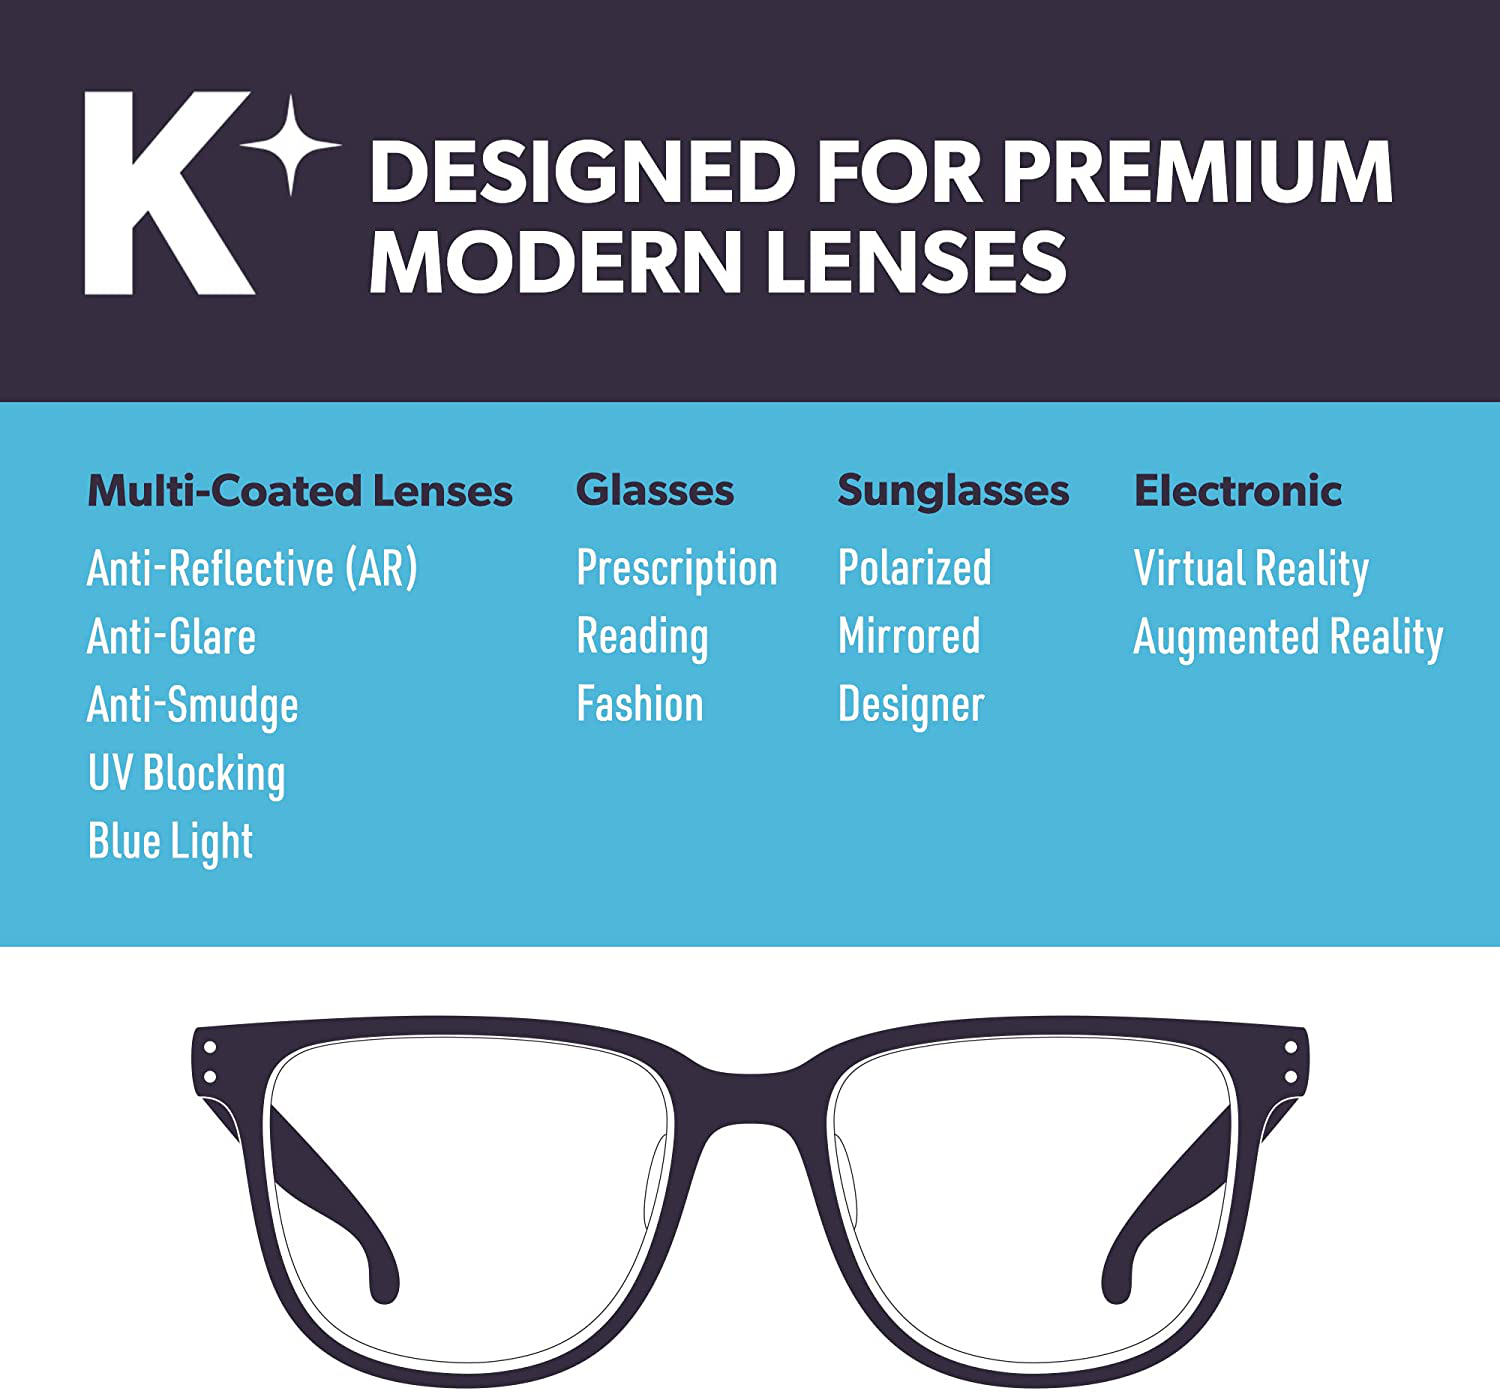 Koala Eyeglass Lens Cleaner Spray Kit | American Made | 18 Ounces + 3 Koala Cloths | Streak and Alcohol Free | Carefully Engineered Glasses Cleaner | Safe for All Lenses